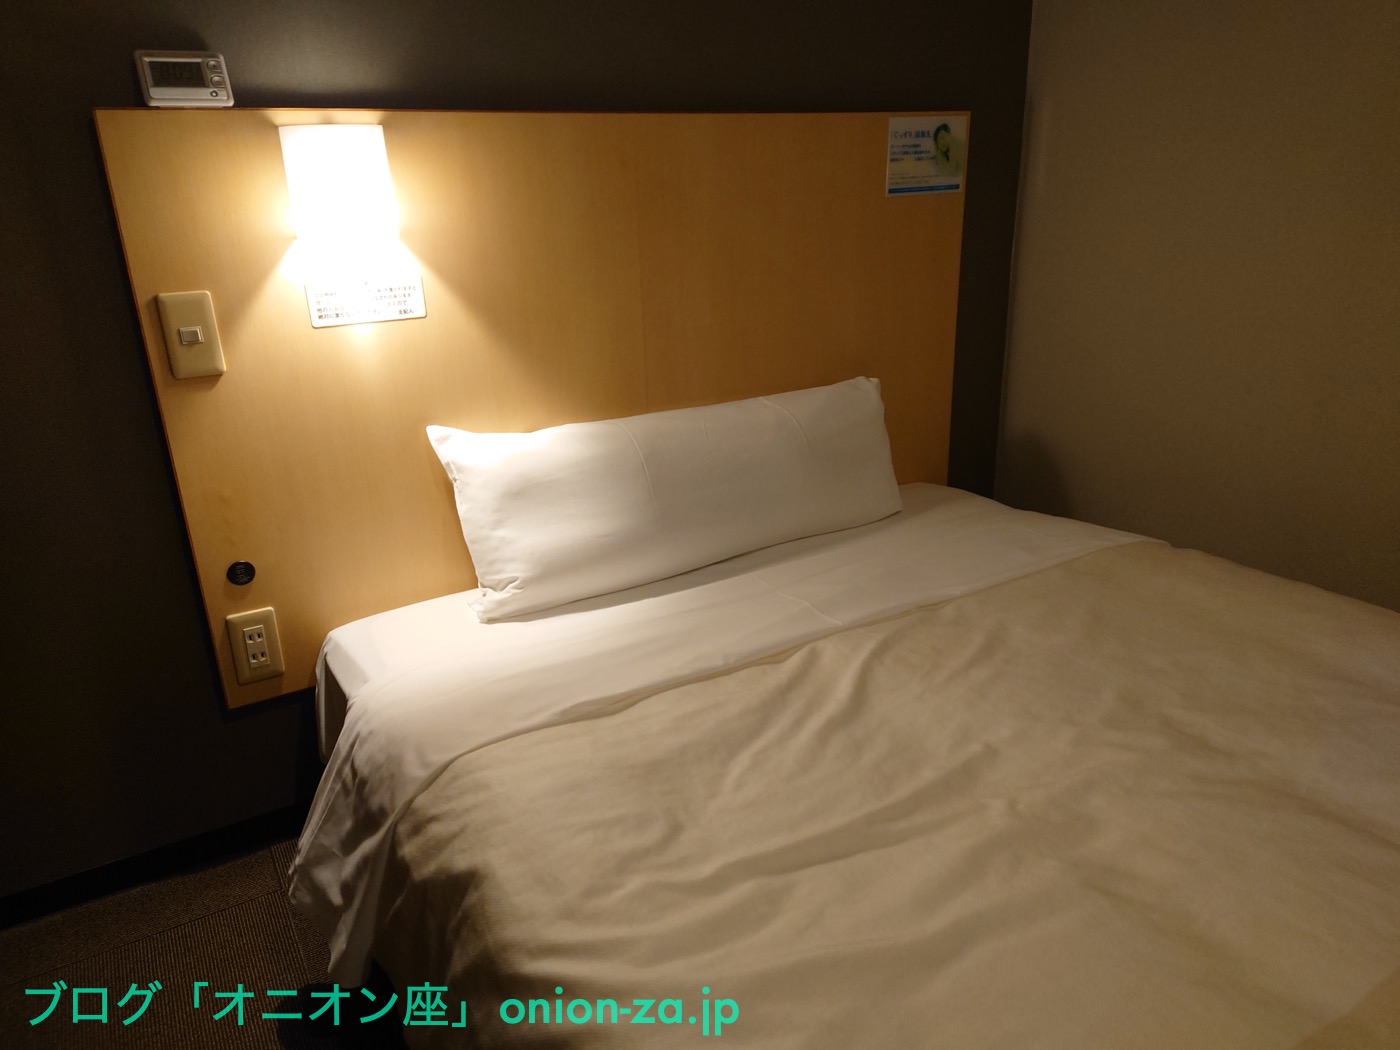 実際に宿泊したスーパーホテルのベッド。ベッドが広いので枕の大きさがピンとこなかった